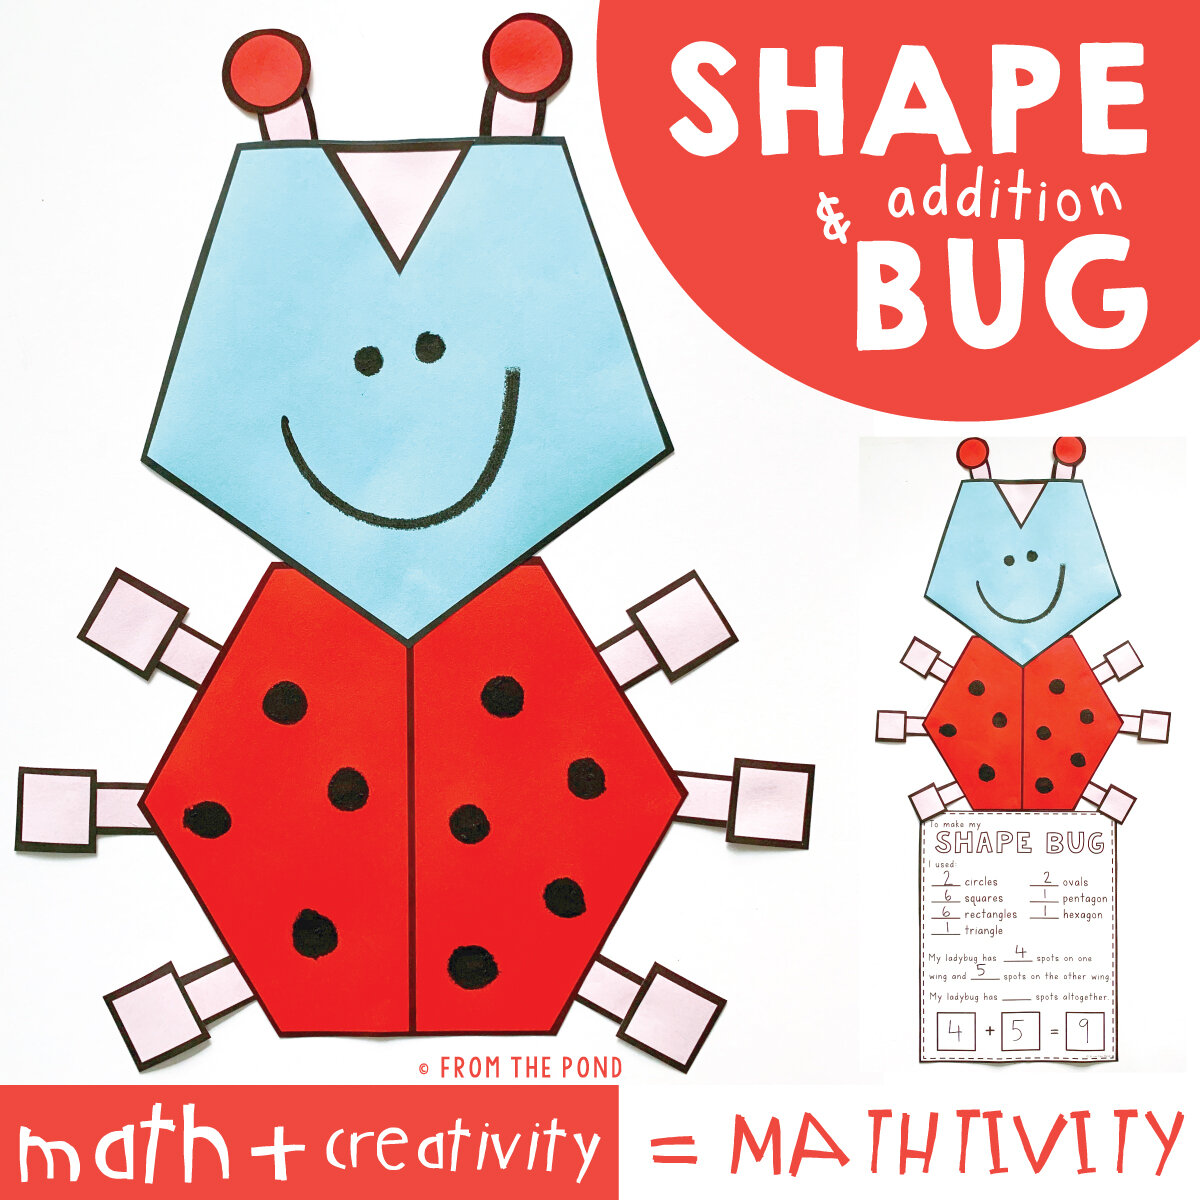 shape-bug-mathtivity-pic-01.jpg